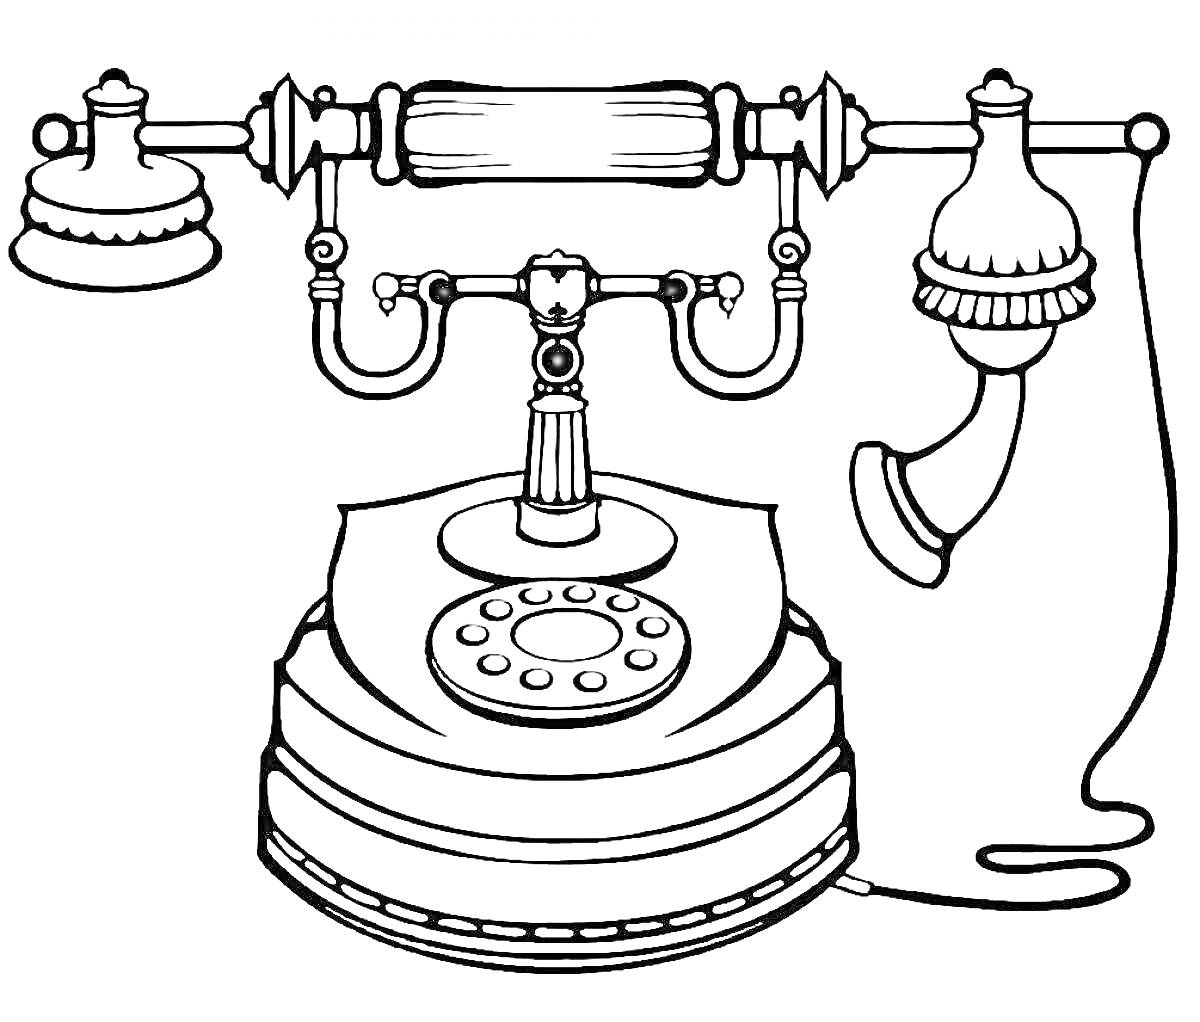 Раскраска Винтажный телефон - корпус, трубка, дисковый номеронабиратель, провод